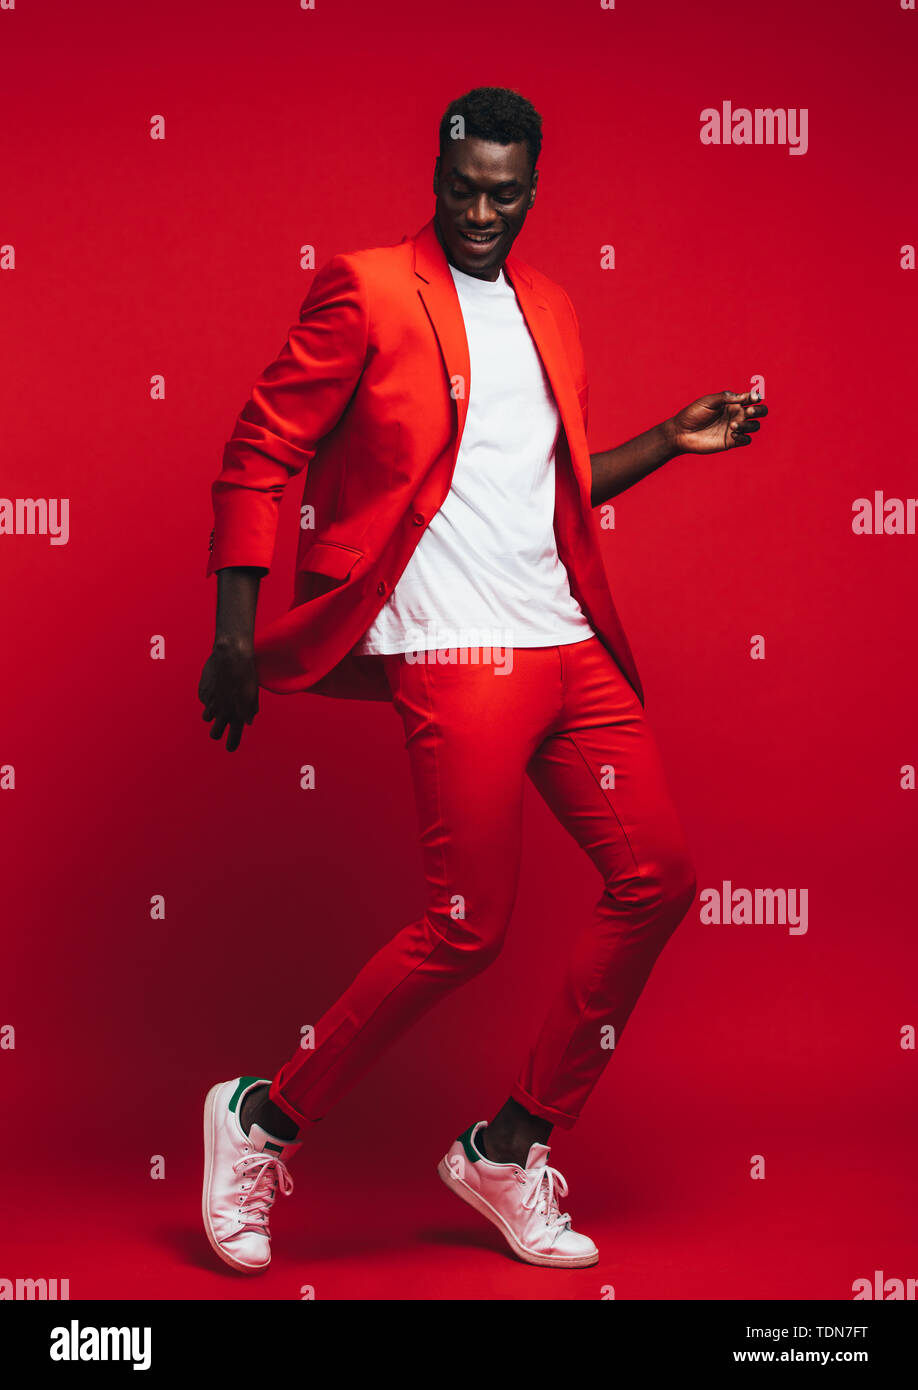 Toute la longueur od beau jeune homme africain dansant sur fond rouge. L'homme en habit rouge élégant montrant quelques mouvements de danse. Banque D'Images